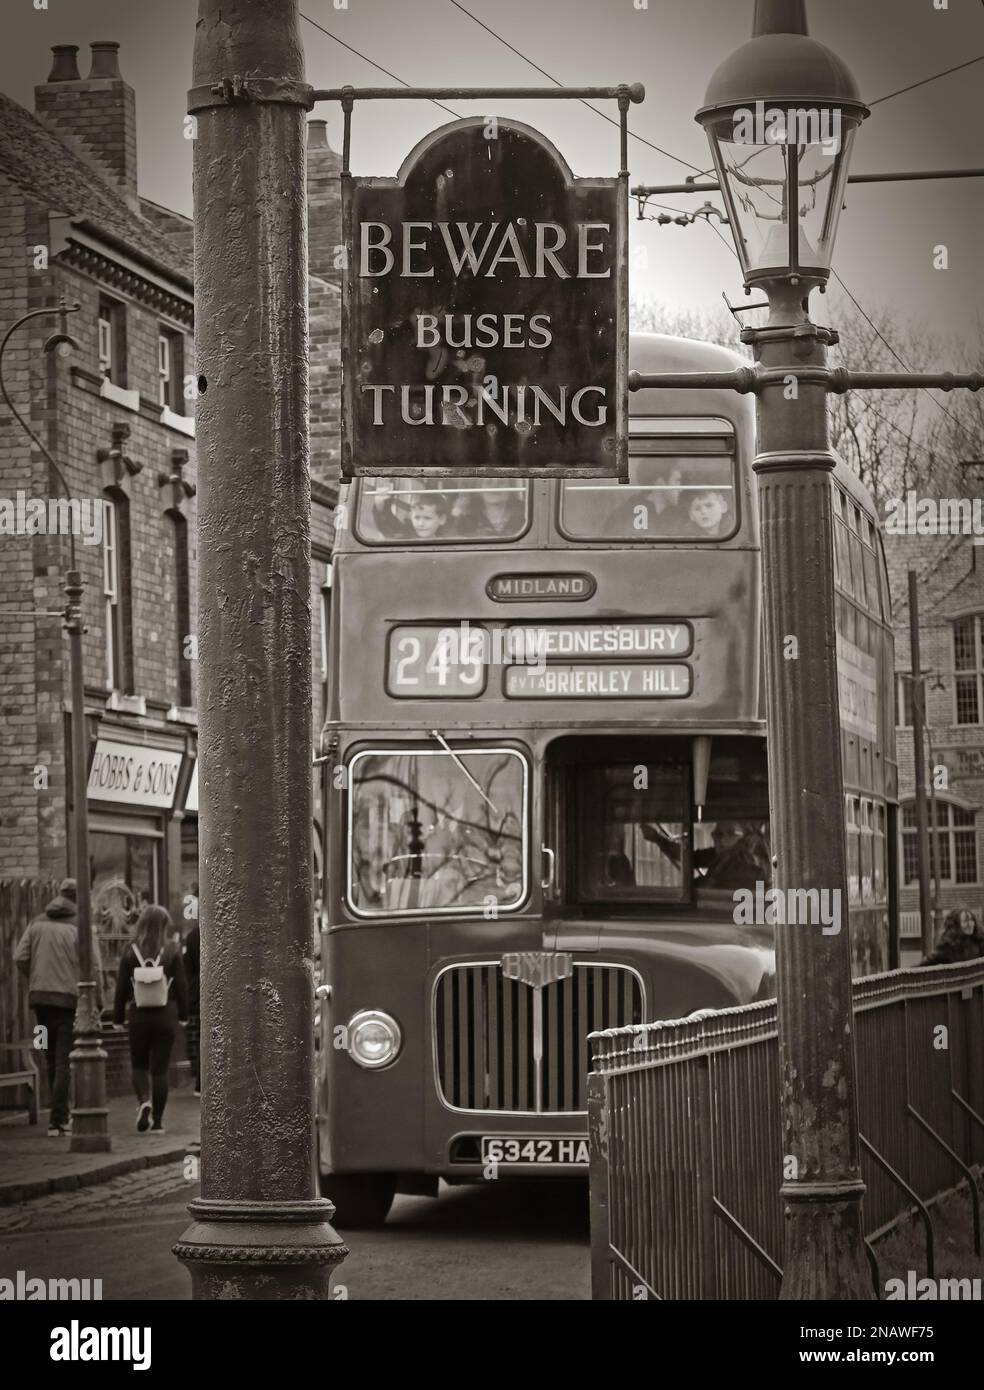 Prenez garde aux bus en tournant le panneau, dans la rue, - 245 Midland Red bus approche à Wednesbury via Brierly Hill, 6342HA Banque D'Images